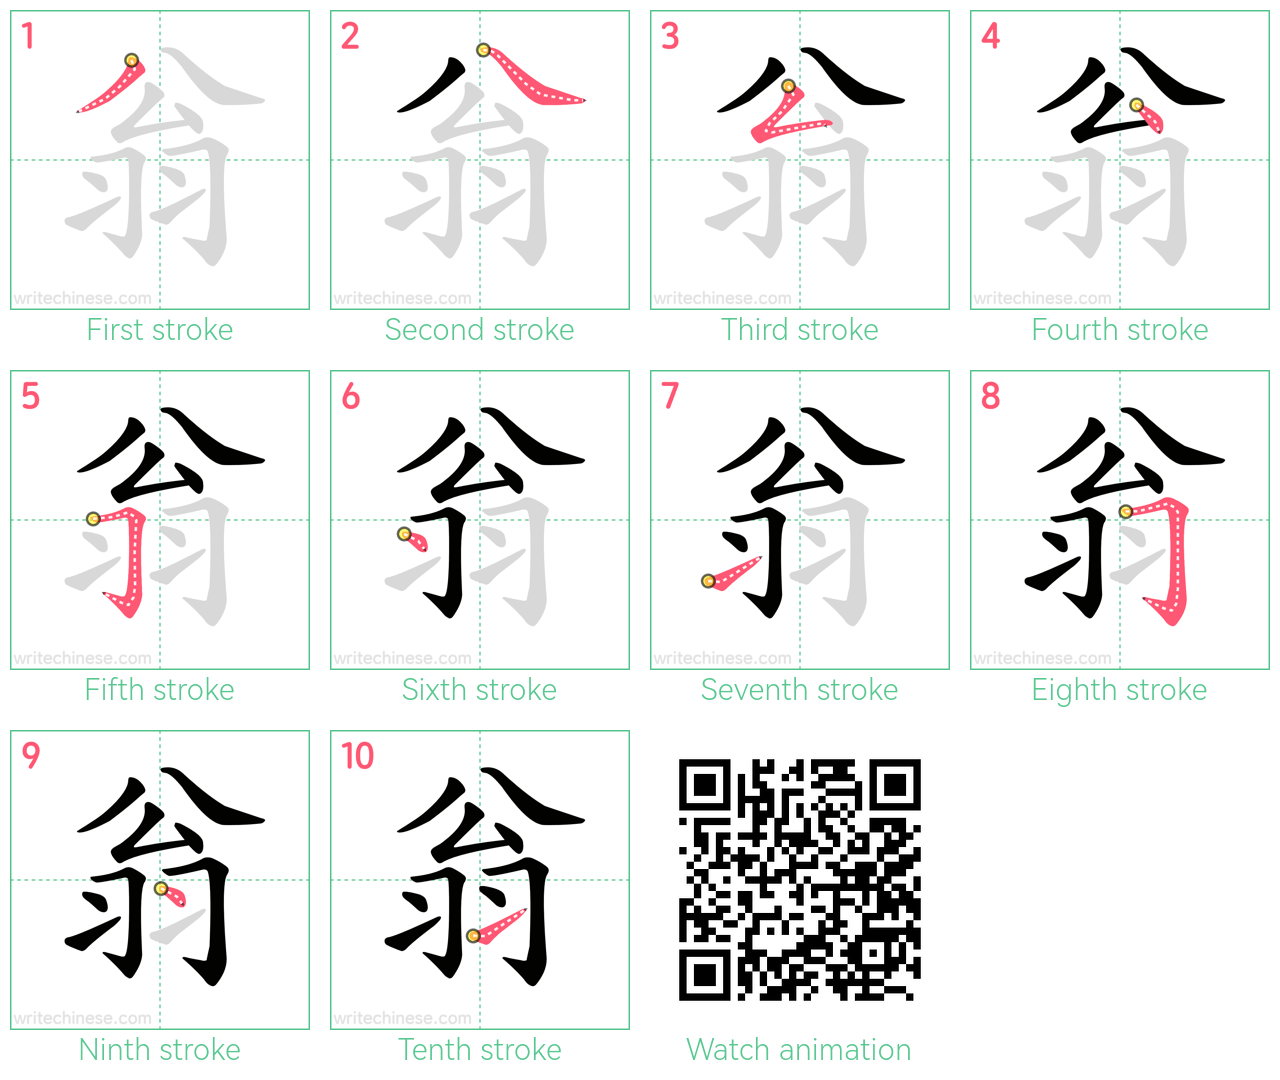 翁 step-by-step stroke order diagrams